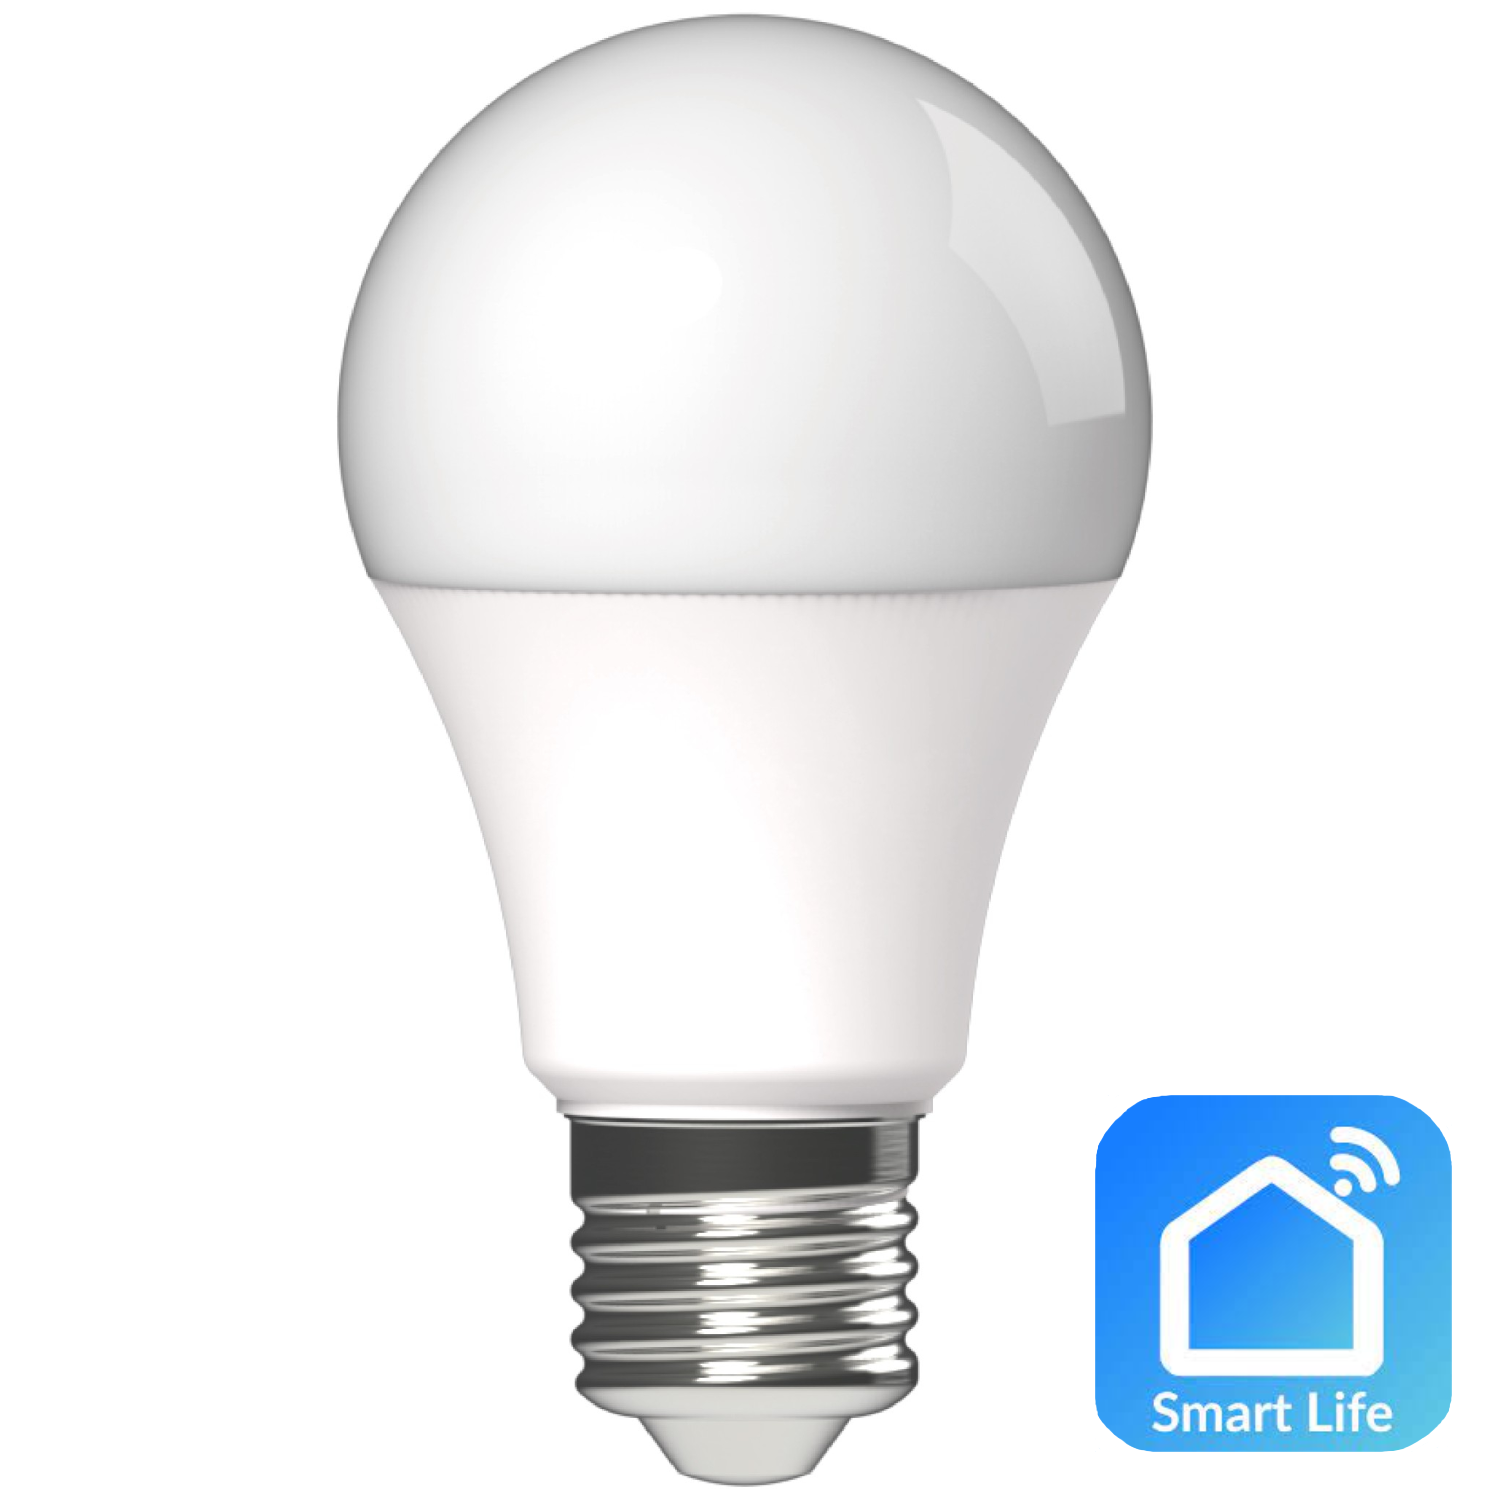 E27 Smart led lamp - 806 lumen - Avide